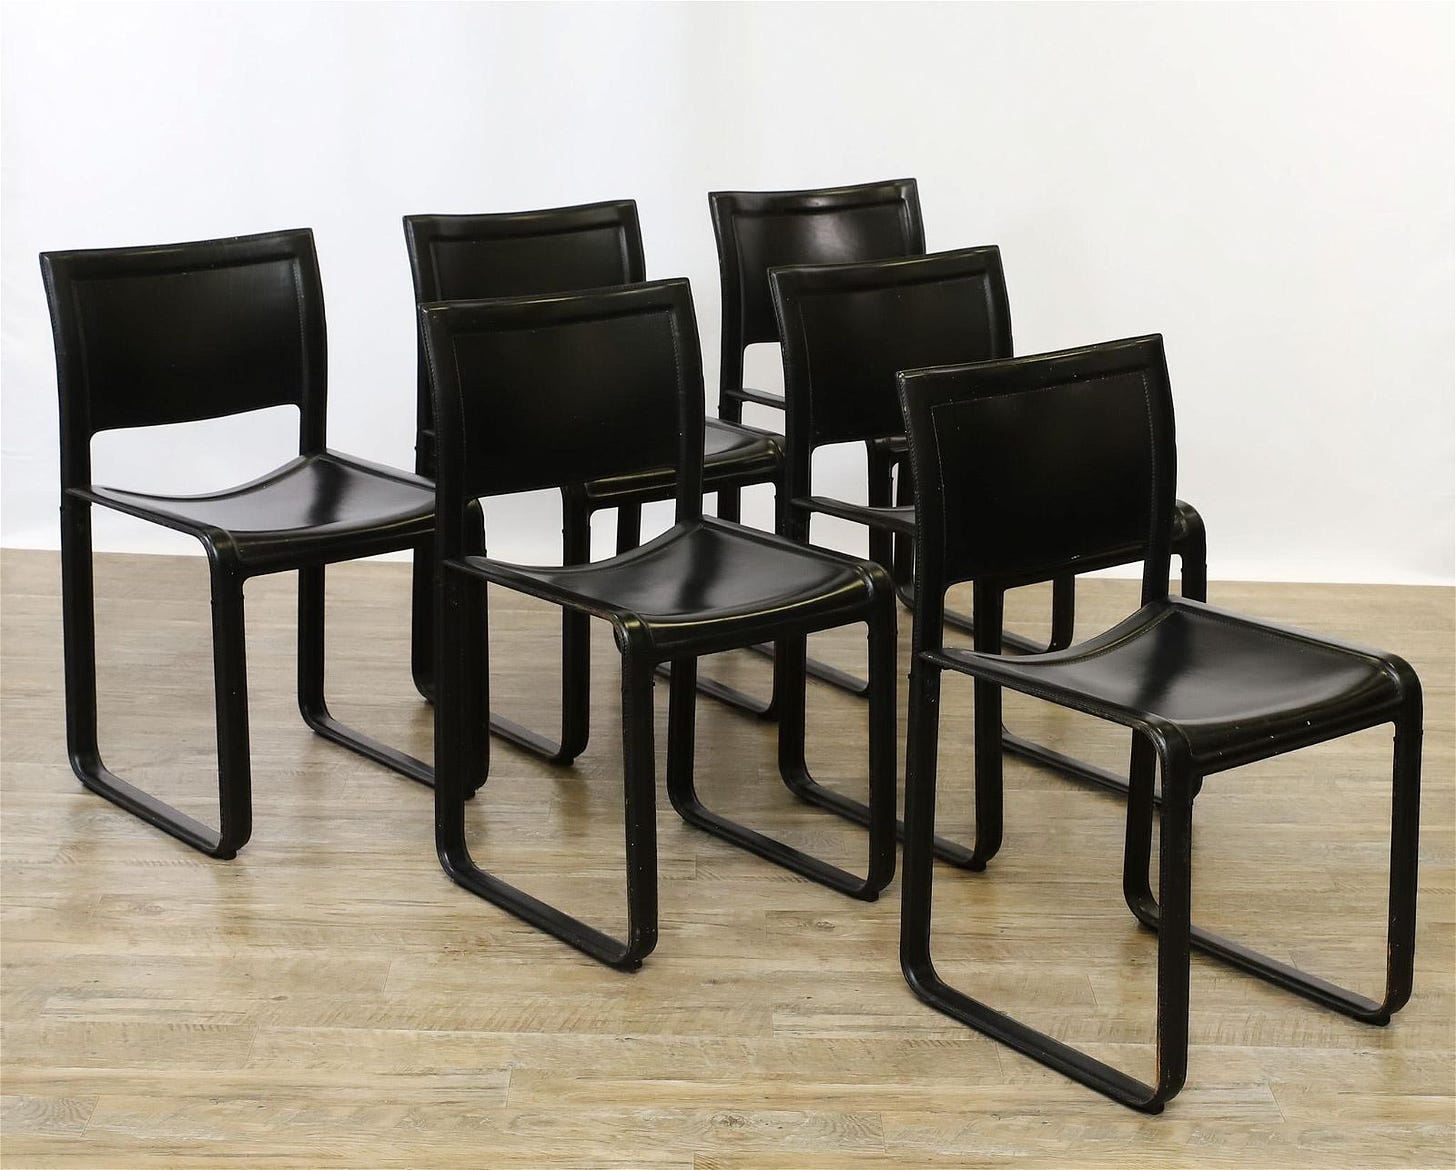 Tito Agnoli for Matteo Grassi "Sistina" Chairs